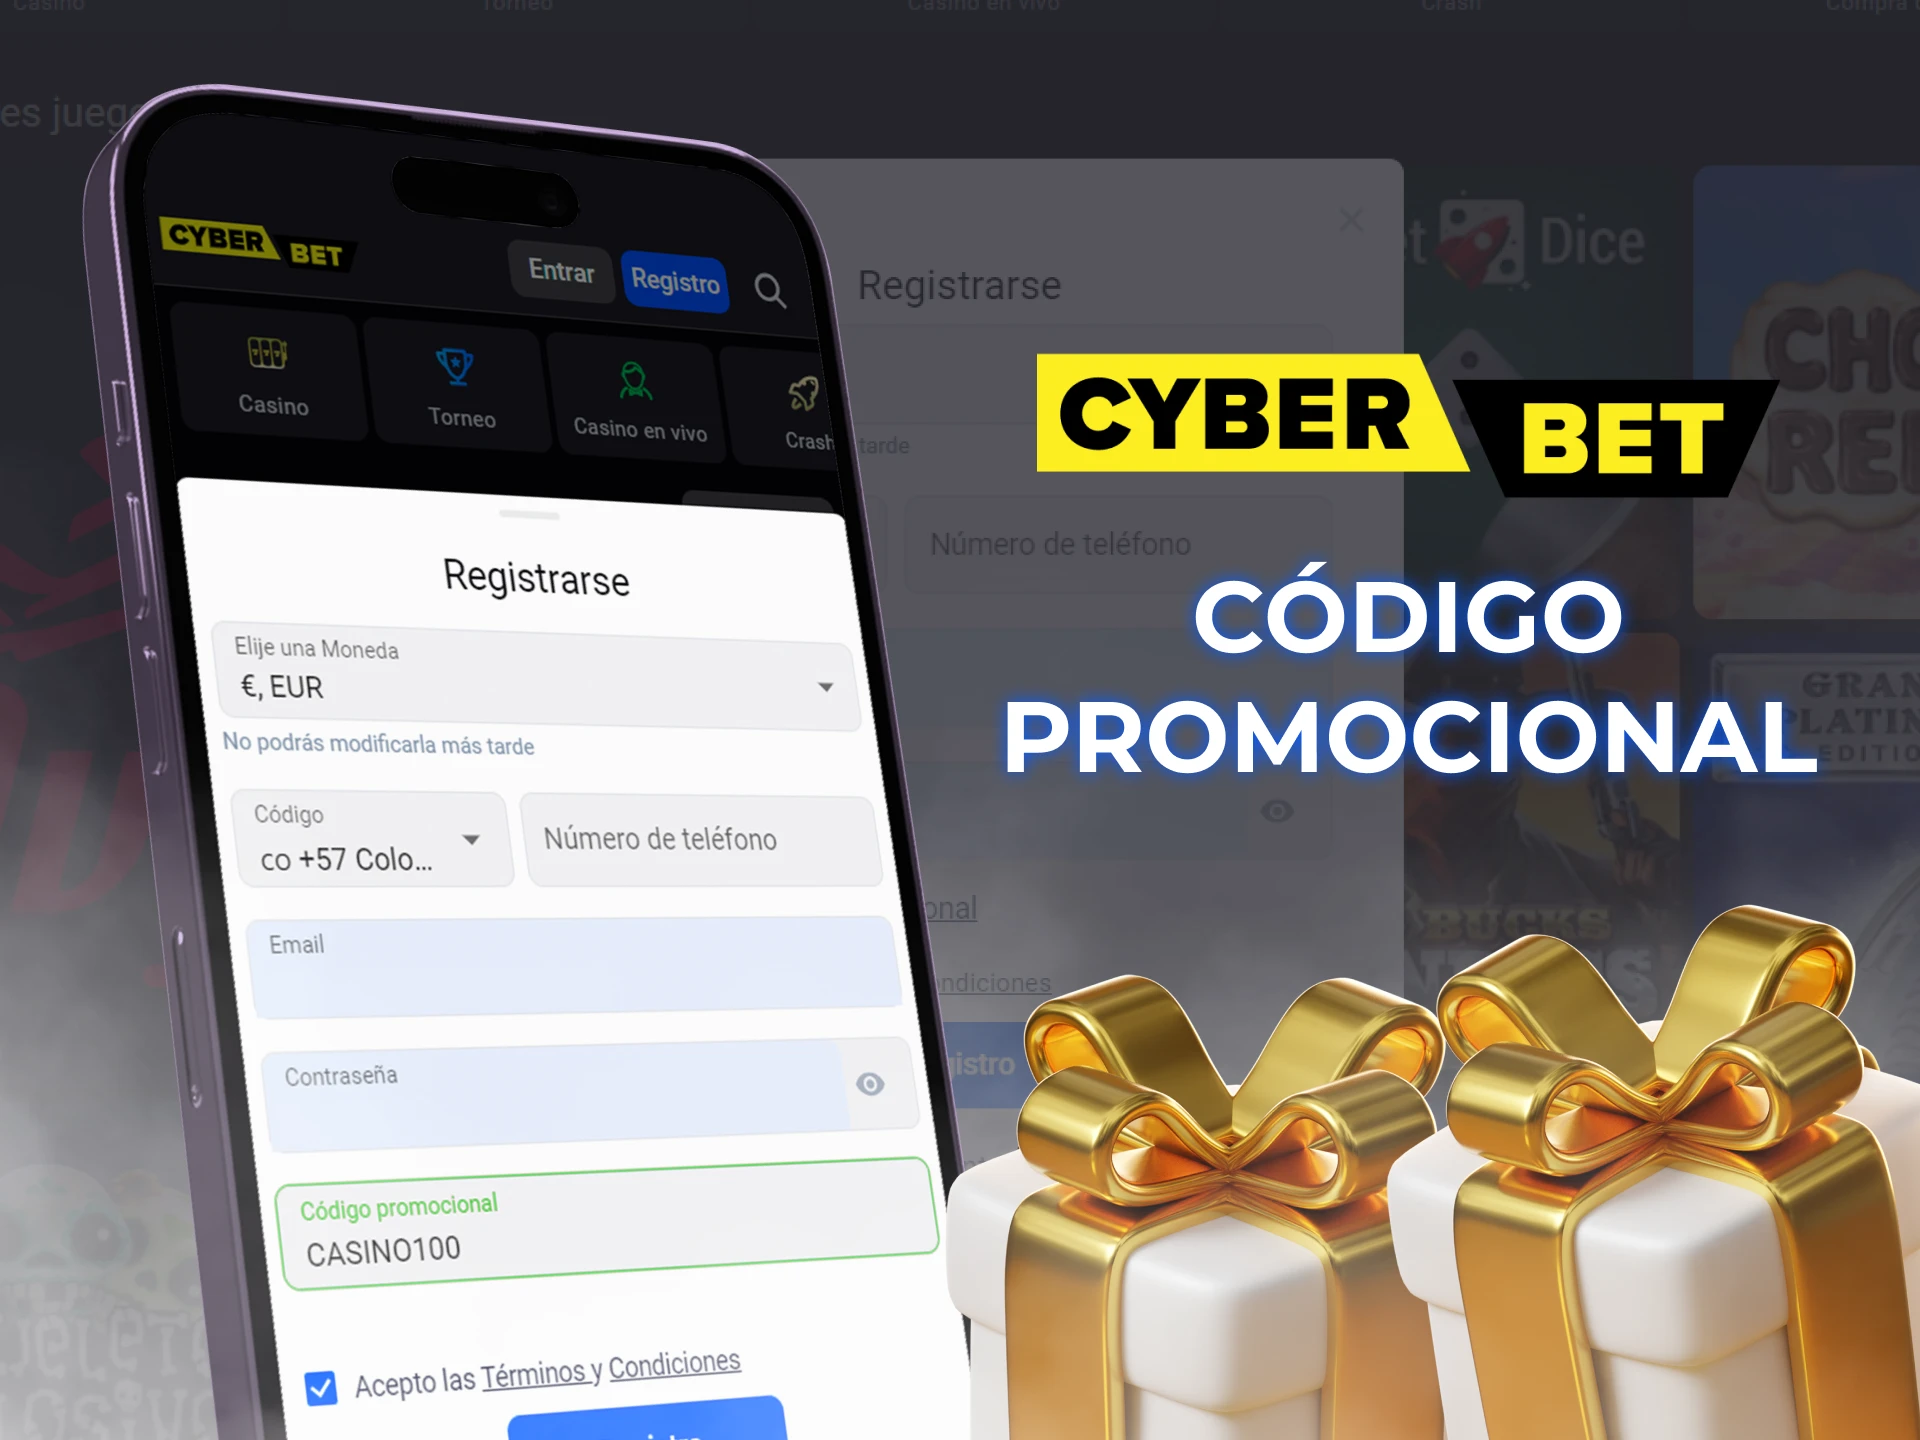 Utiliza el código promocional para recibir un bono de bienvenida en la aplicación Cyber Bet.